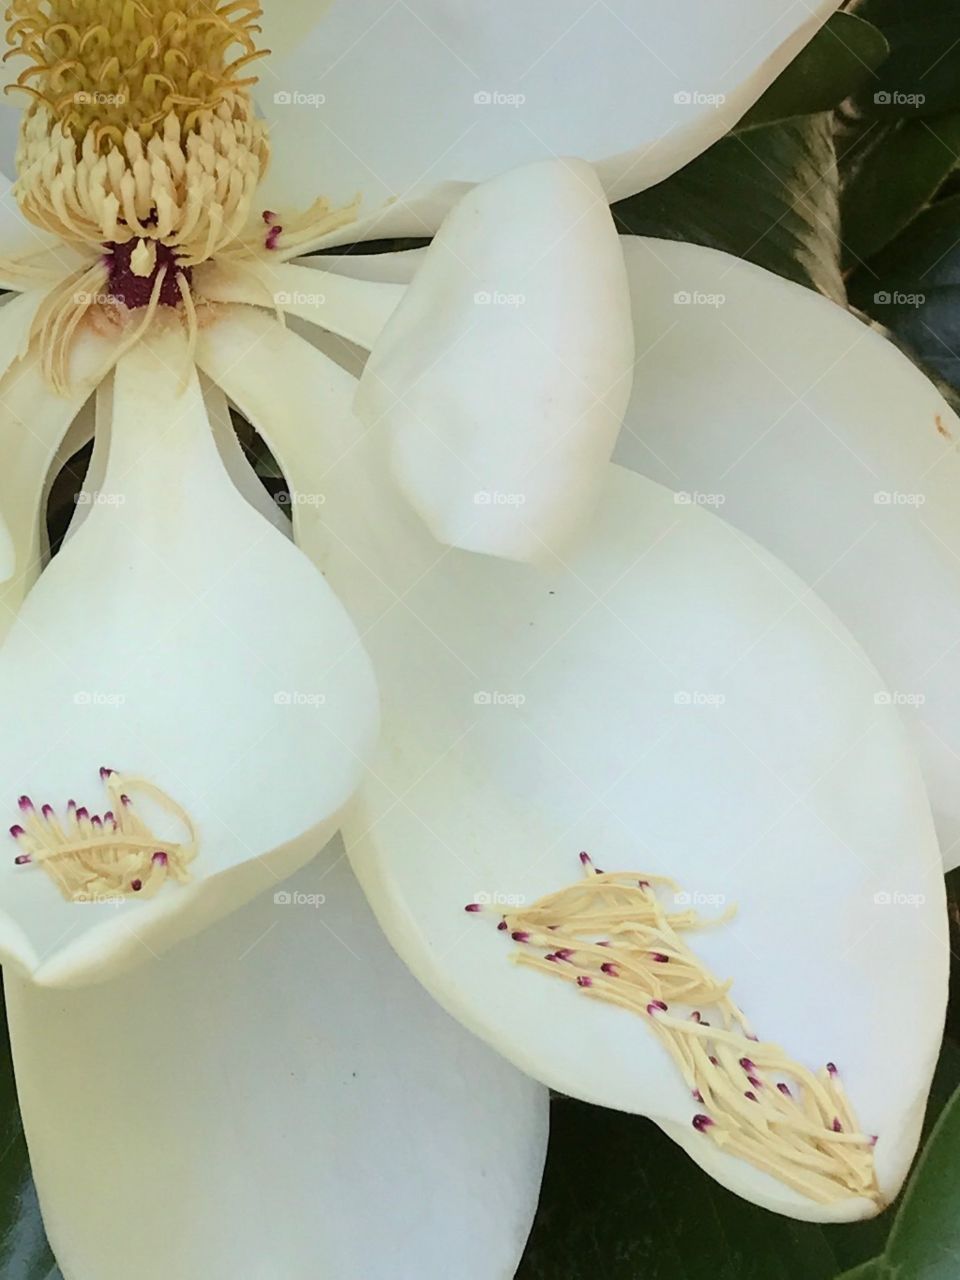 Magnolia petals